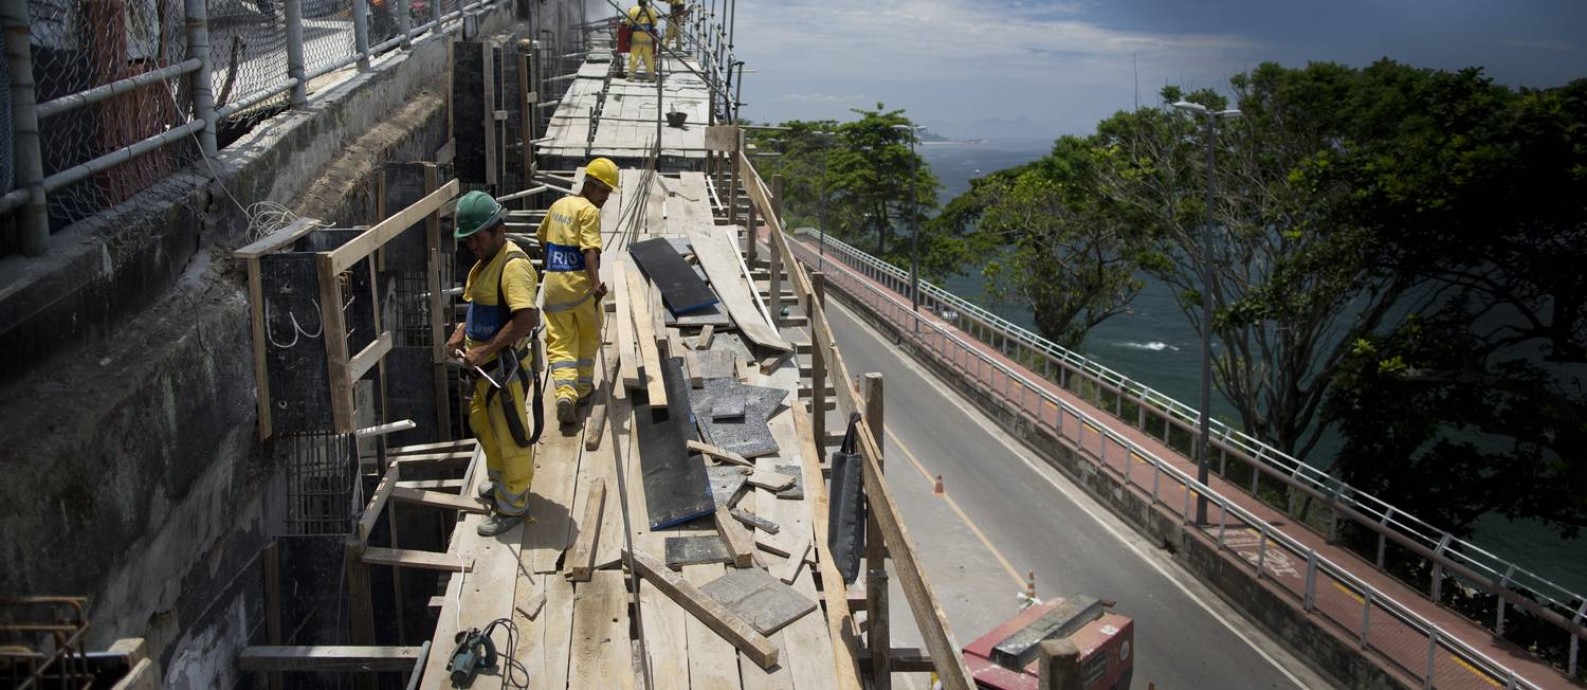 Operários trabalham em obra de contenção na Avenida Niemeyer Foto: Márcia Foletto / Agência O Globo